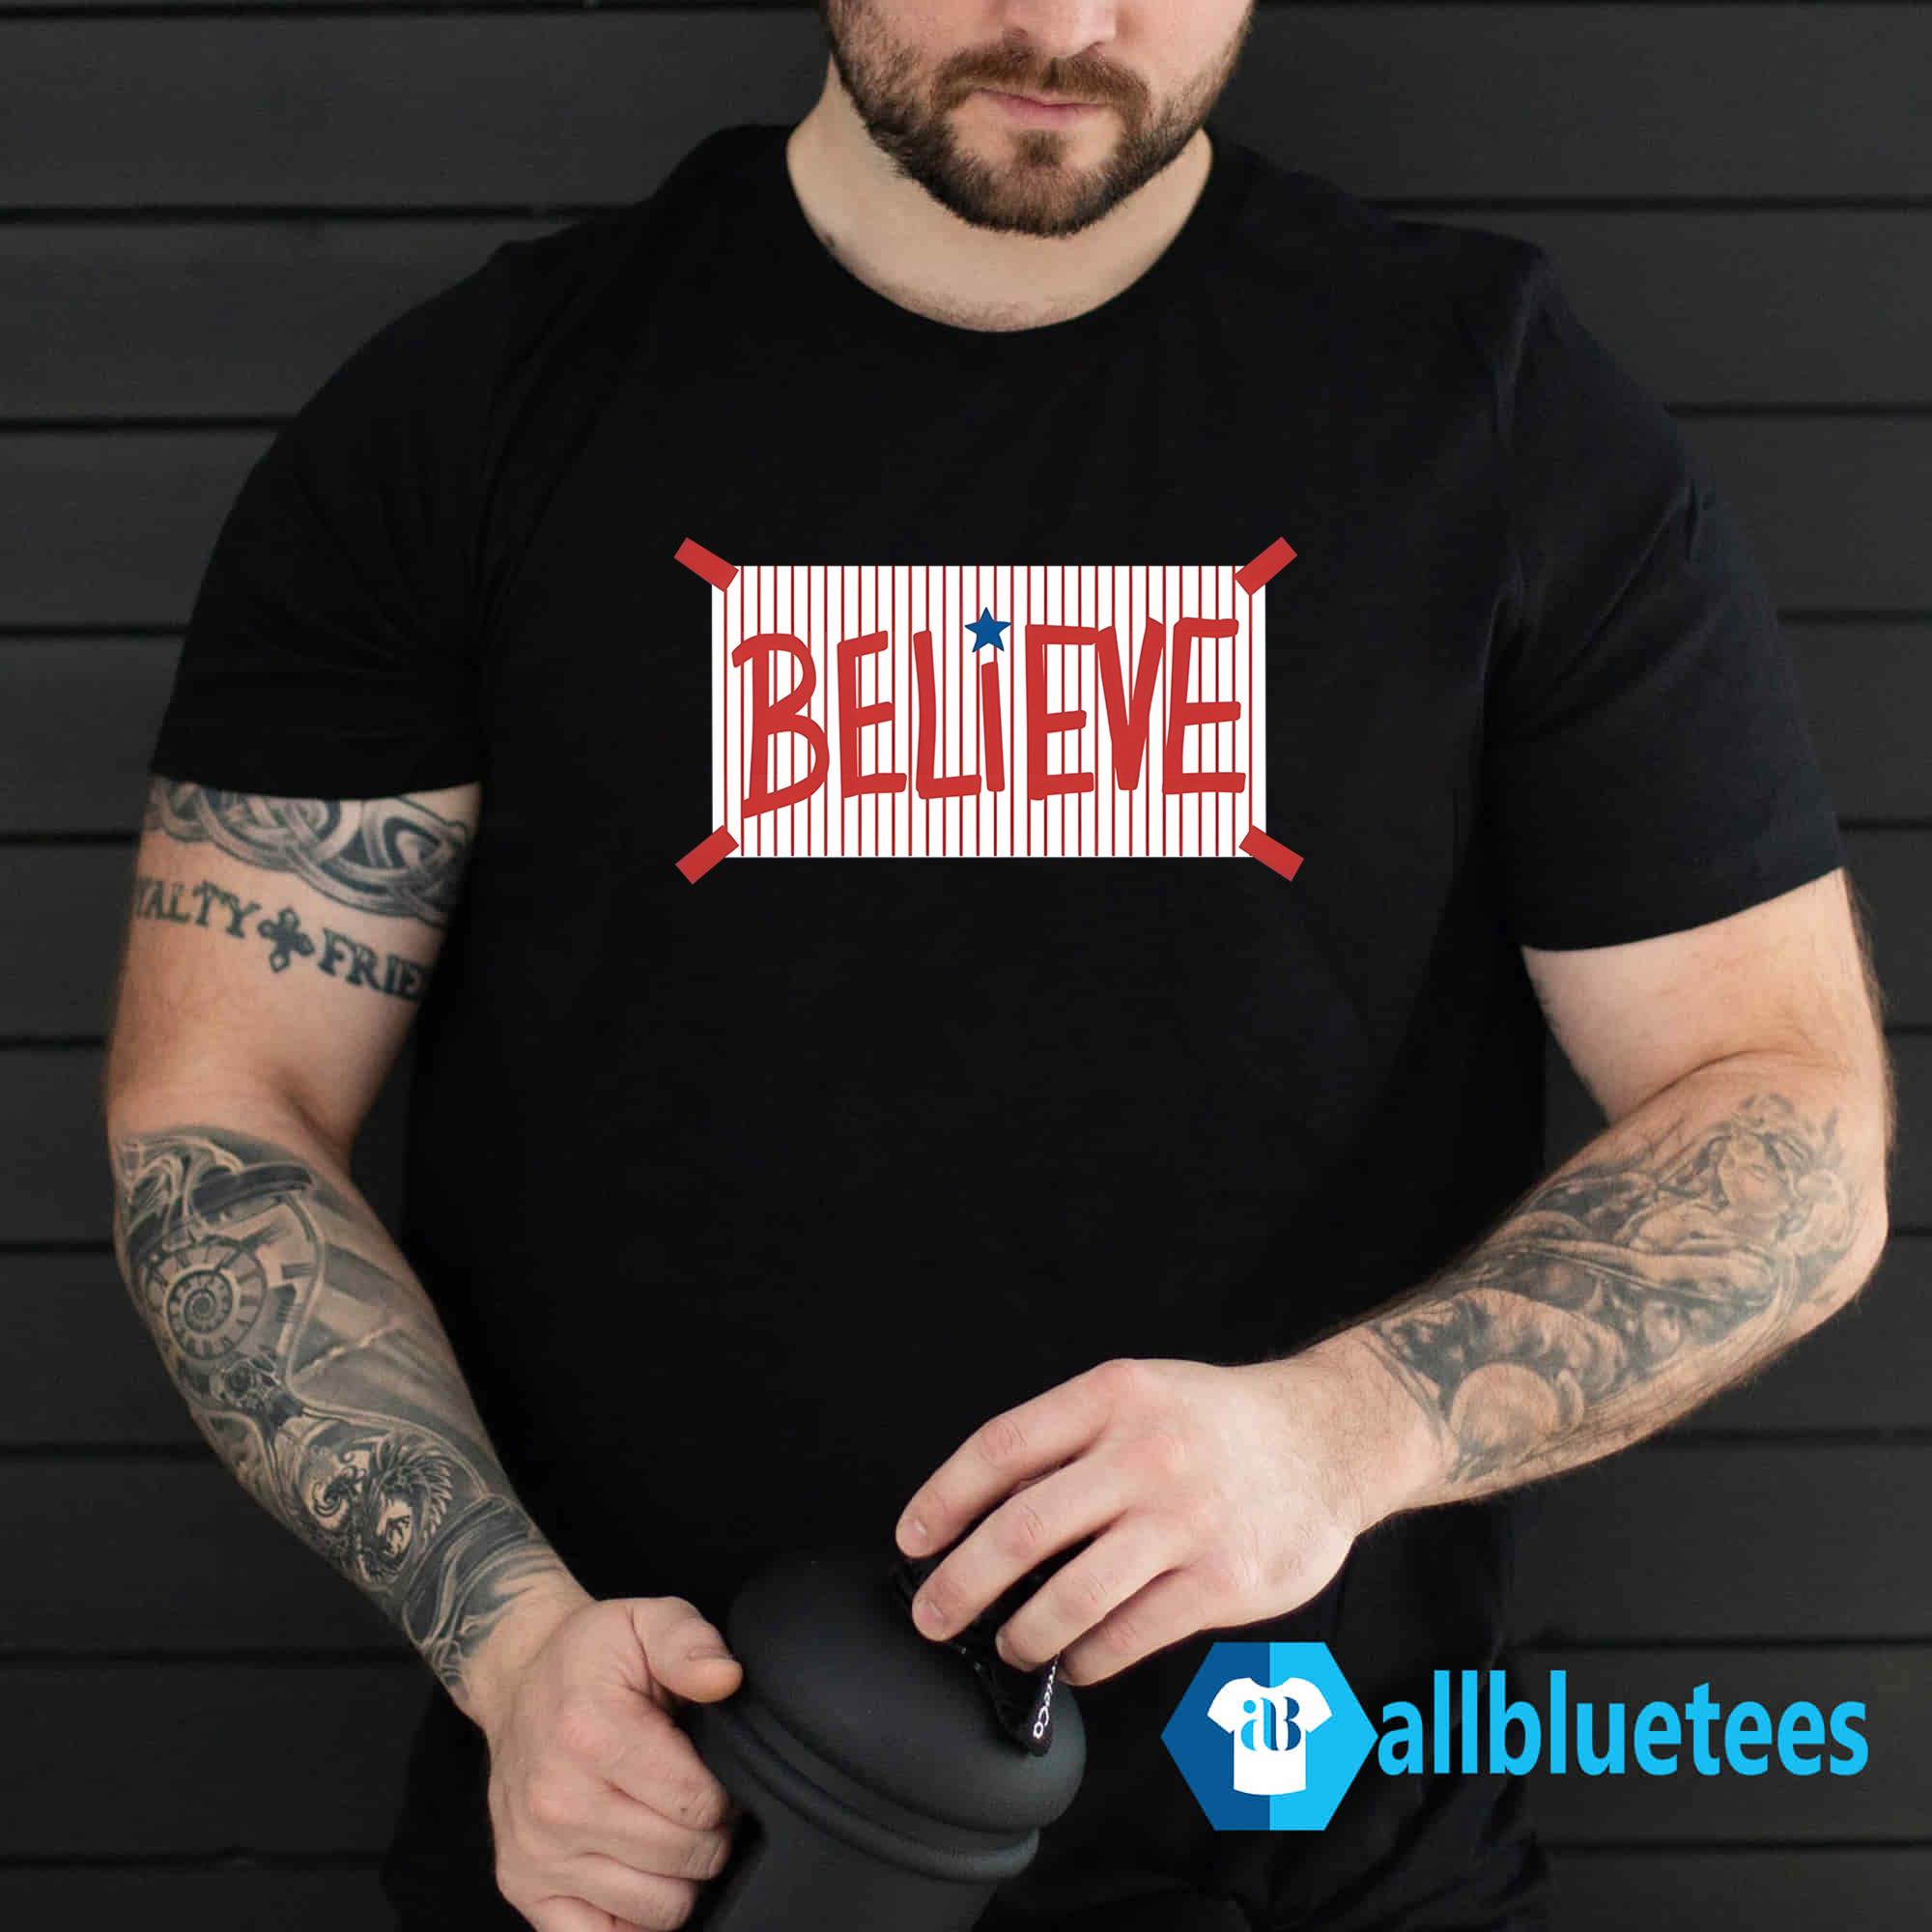 Phillies Believe Women T-Shirt - Teeducks